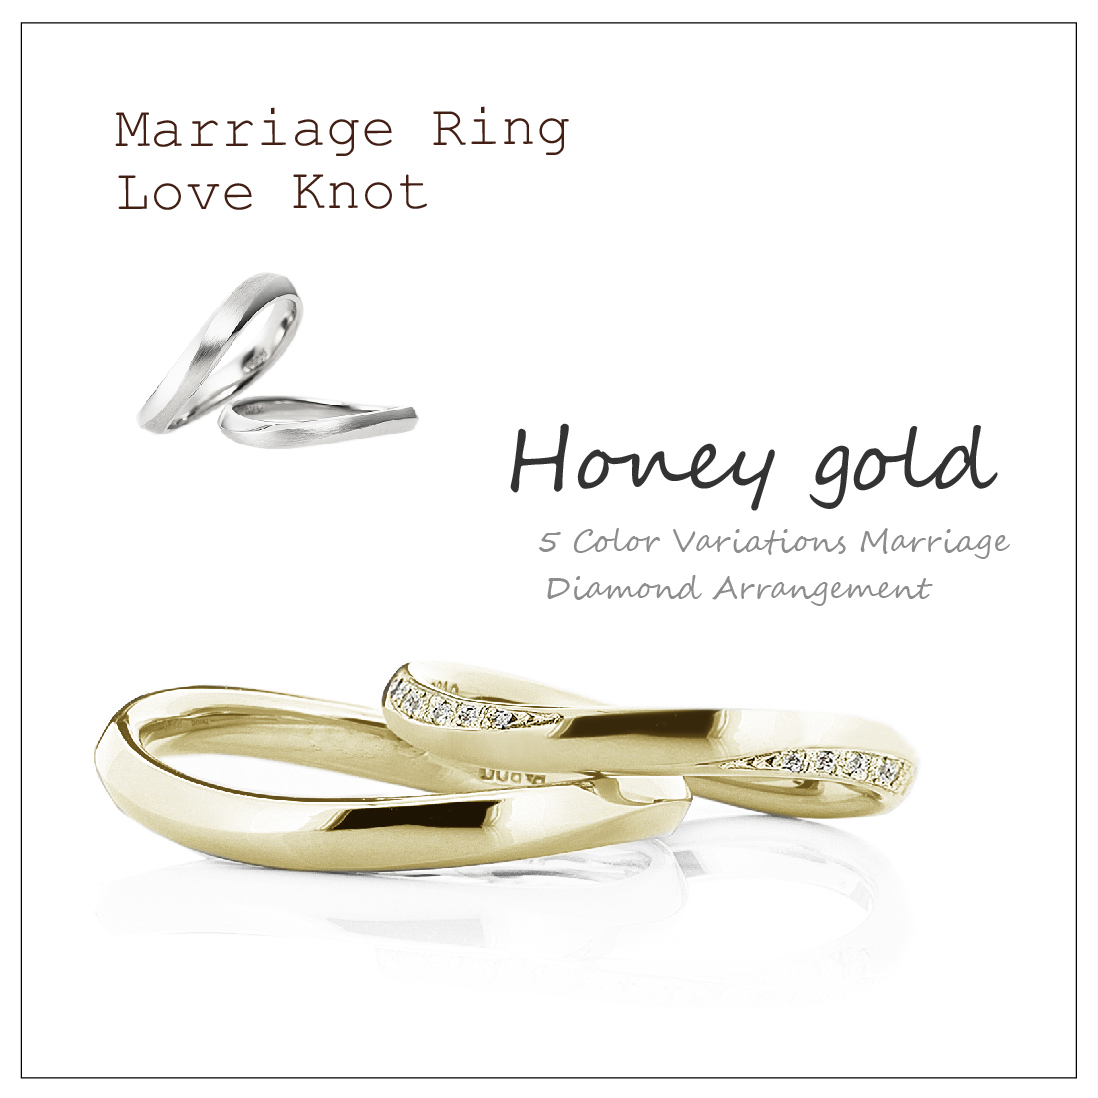 ウエーブのペアの結婚指輪です。2本ともはちみつのような色のハニーゴールドで、レディースはメレダイヤを2面に並べたアレンジです。